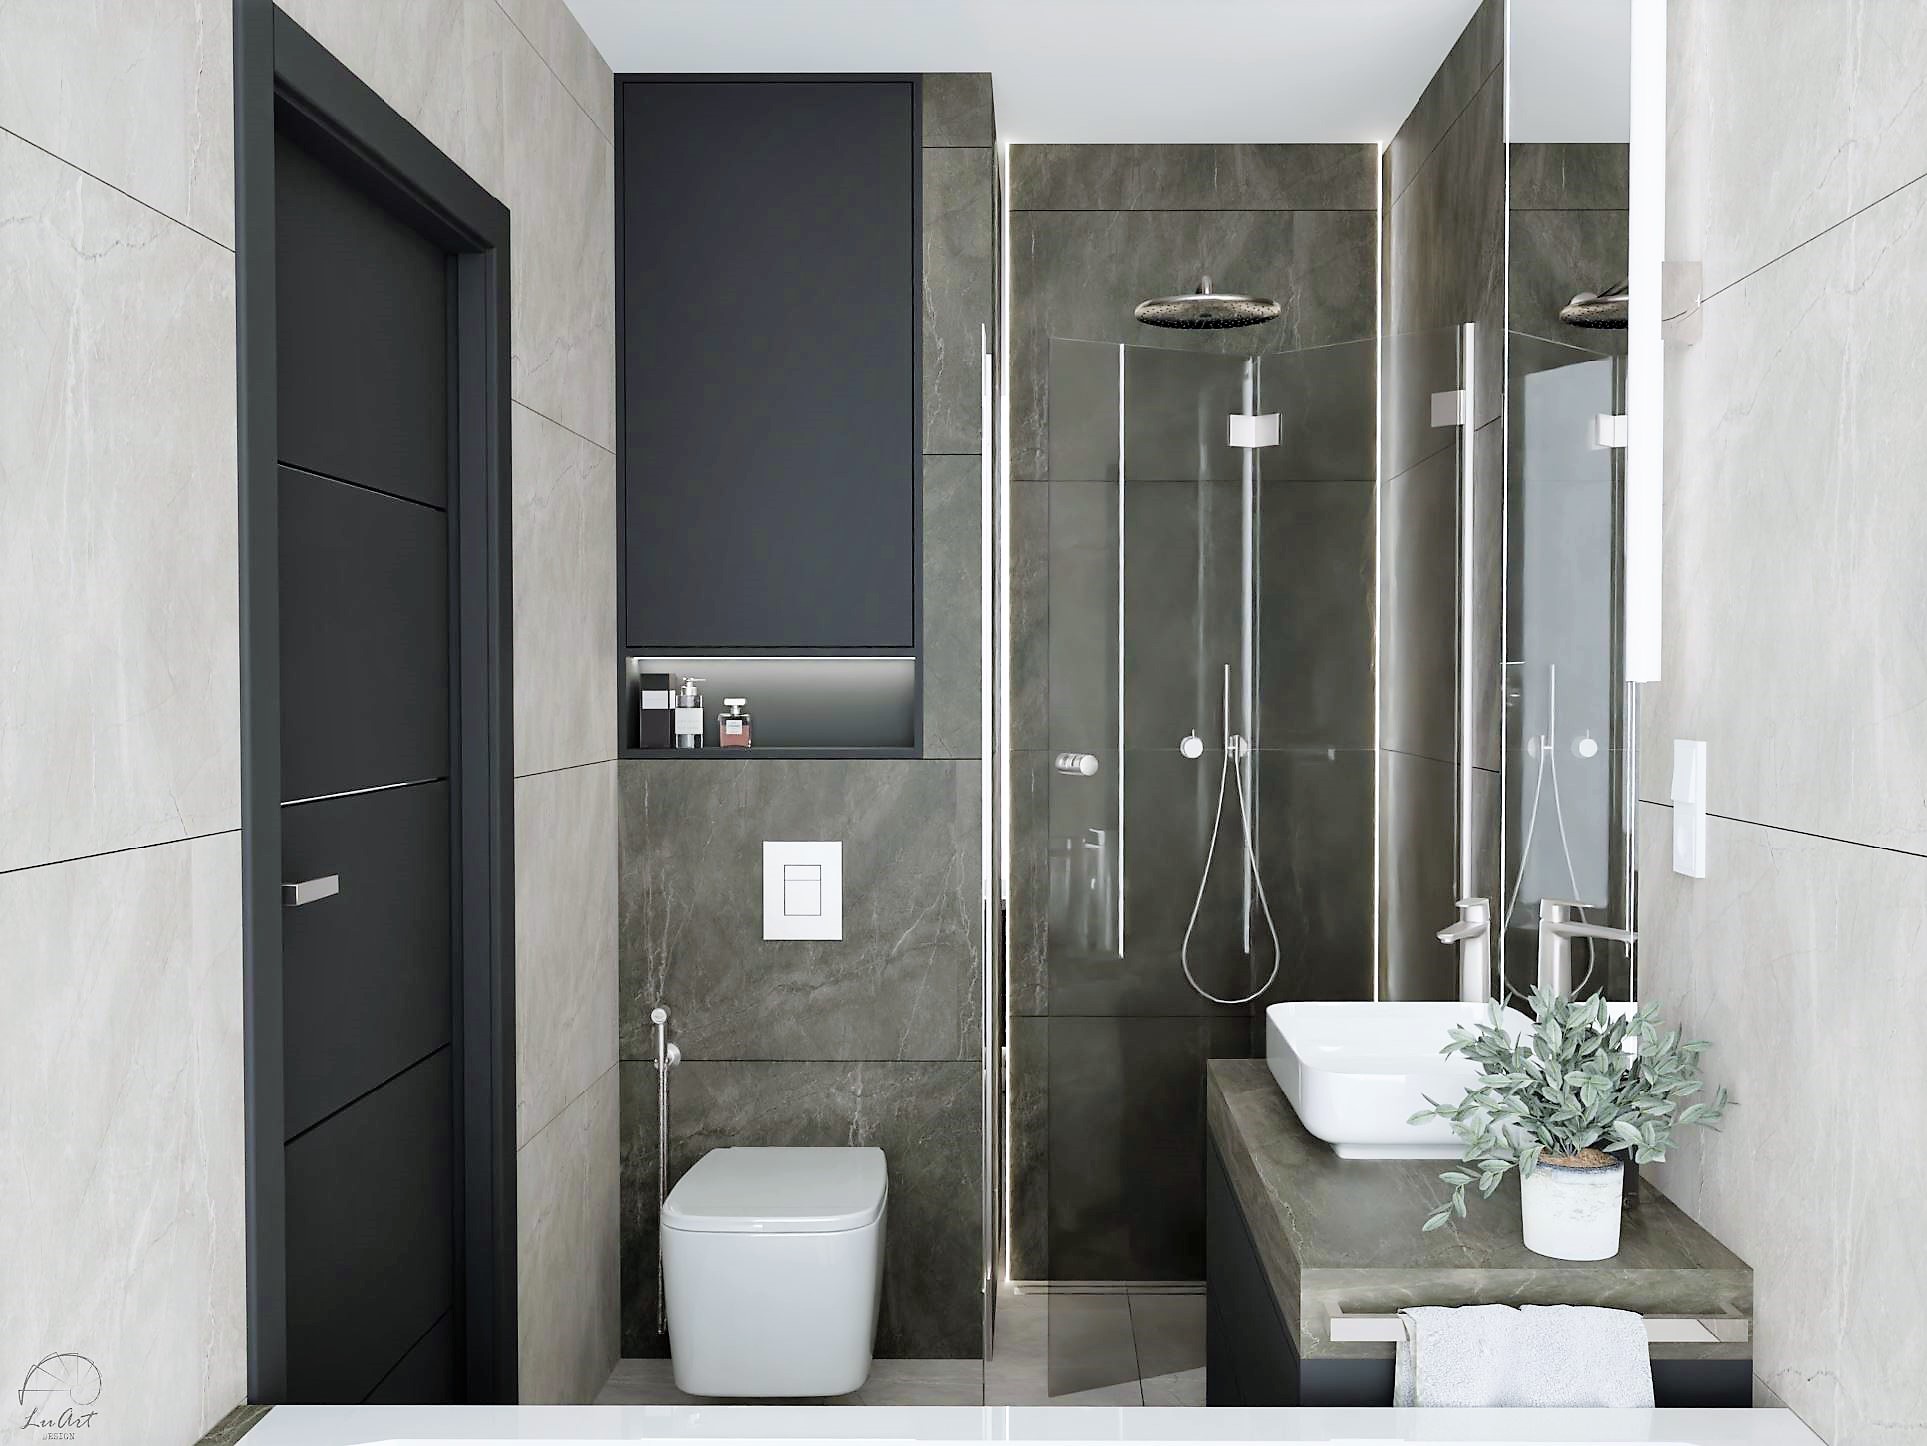 Zdjęcie 1 - Aranżacja łazienki w szarościach z wanną i prysznicem - inspiracja